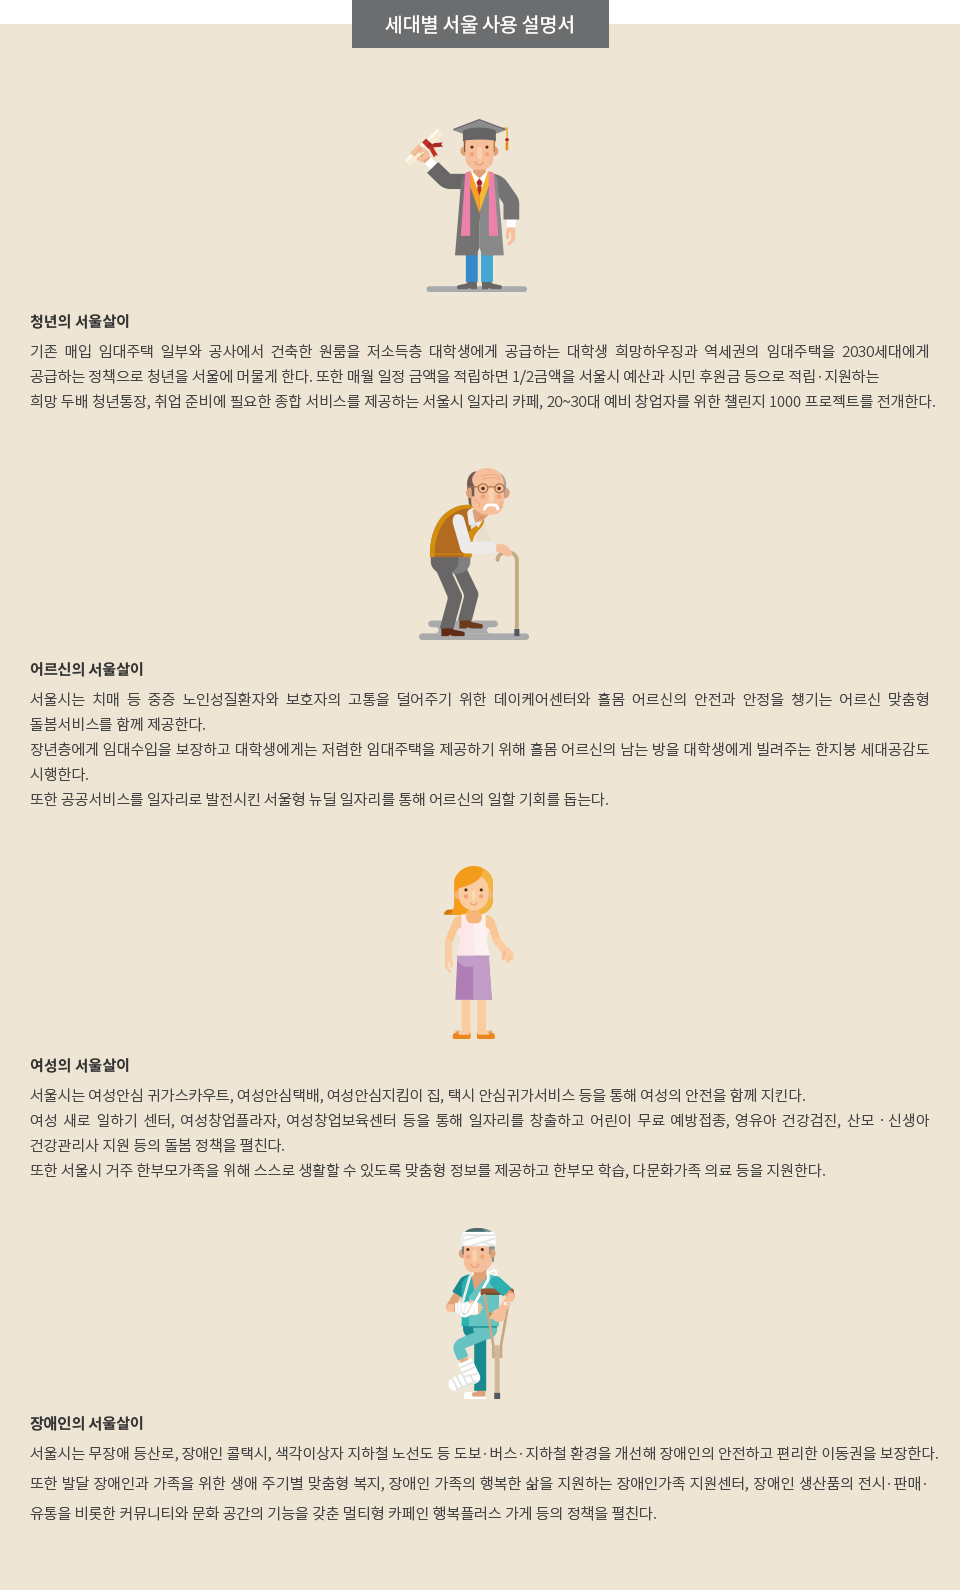 세대별 서울 사용 설명서 자세한 내용 아래 참조